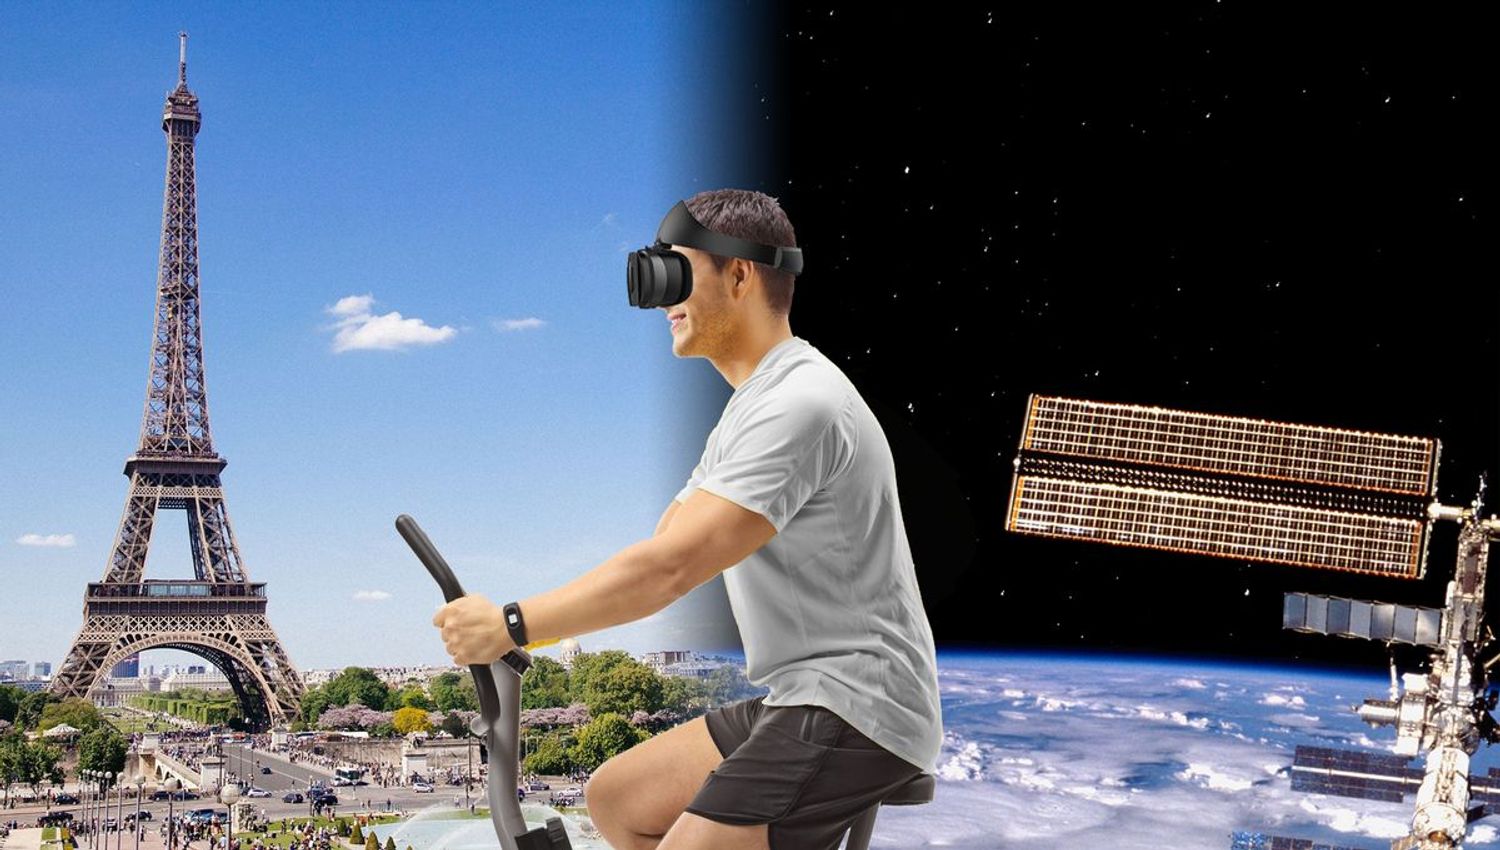 Fit Immersion vous fait voyager et bouger grâce à son casque VR